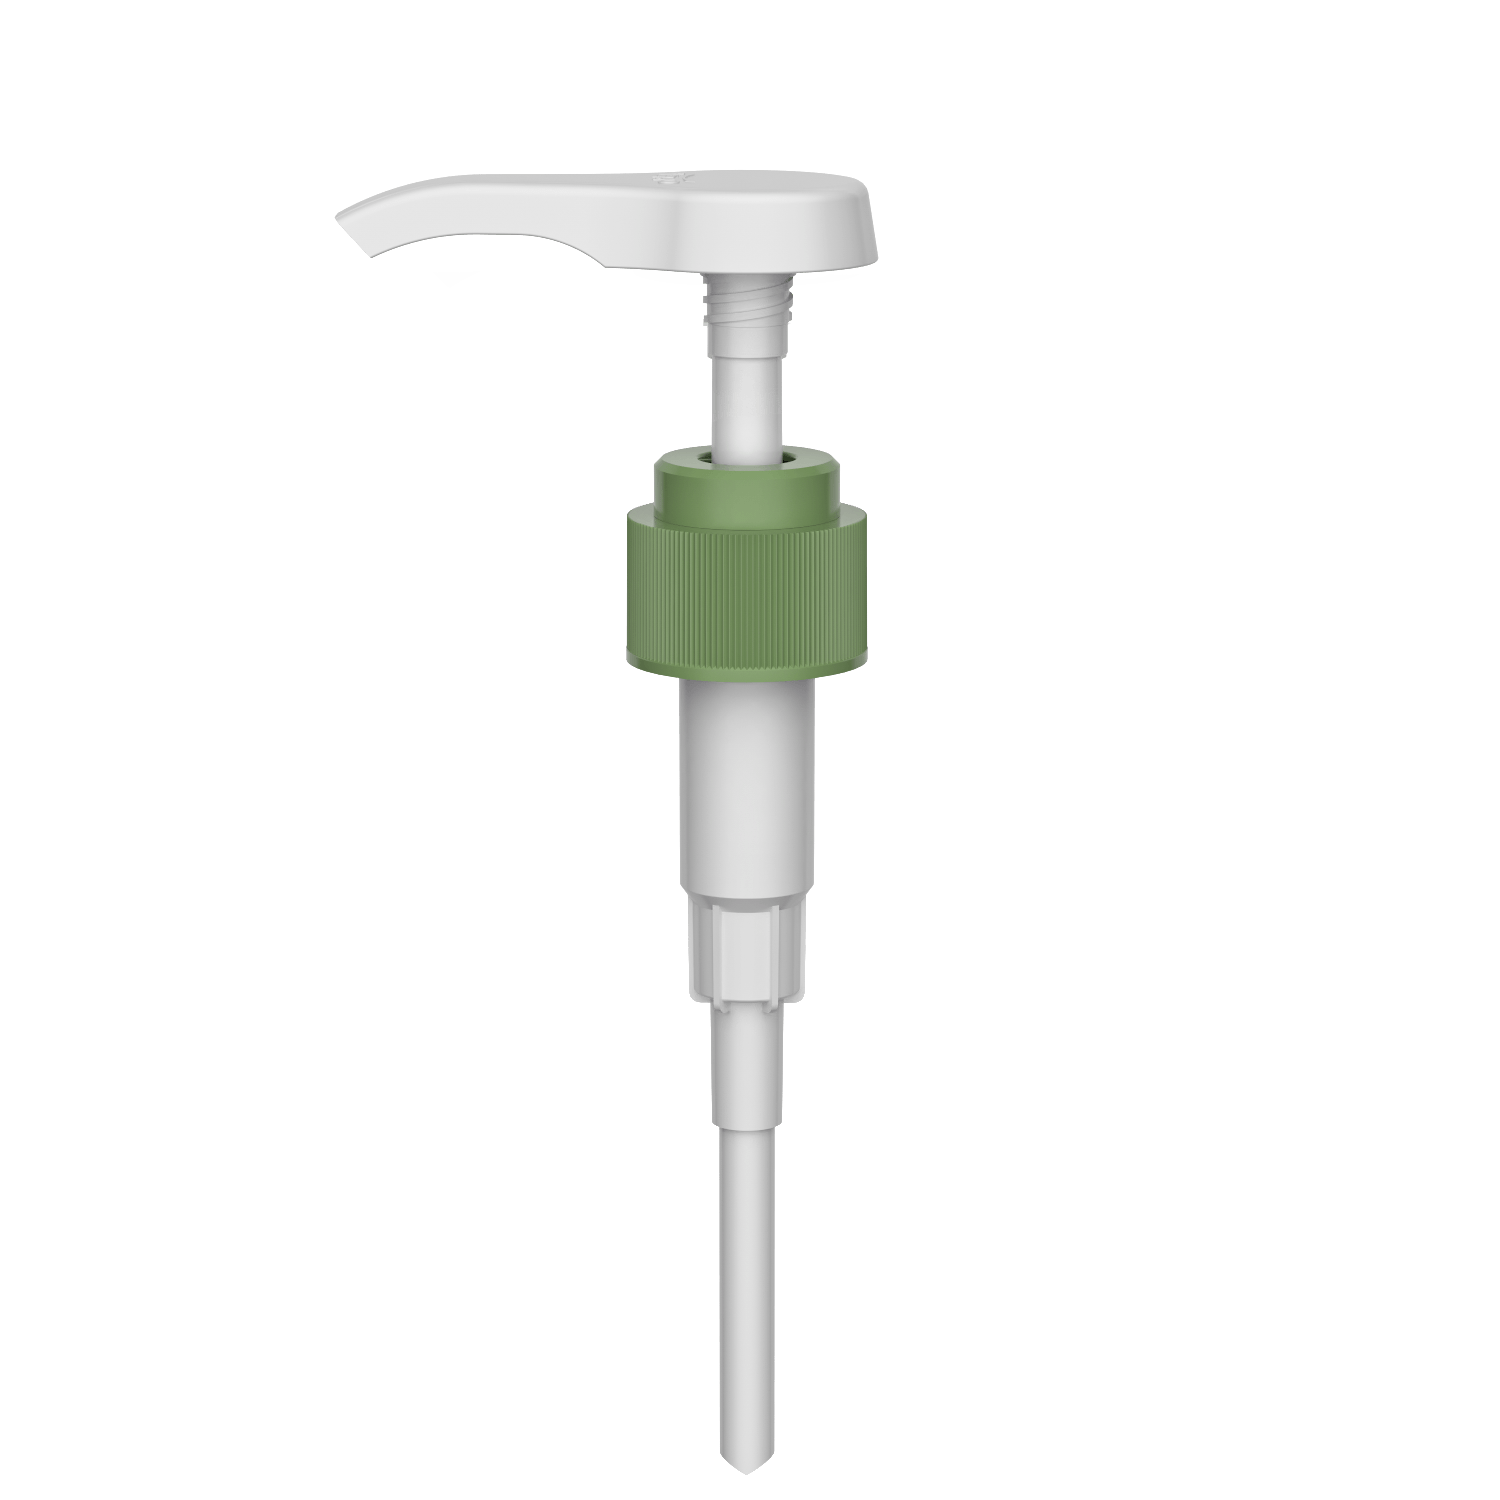 HD-608B 28/410 Flüssigwaschmittelspender mit hoher Dosierung und Shampoo-Ausgang 3.5-4.0CC Lotion Pumpe